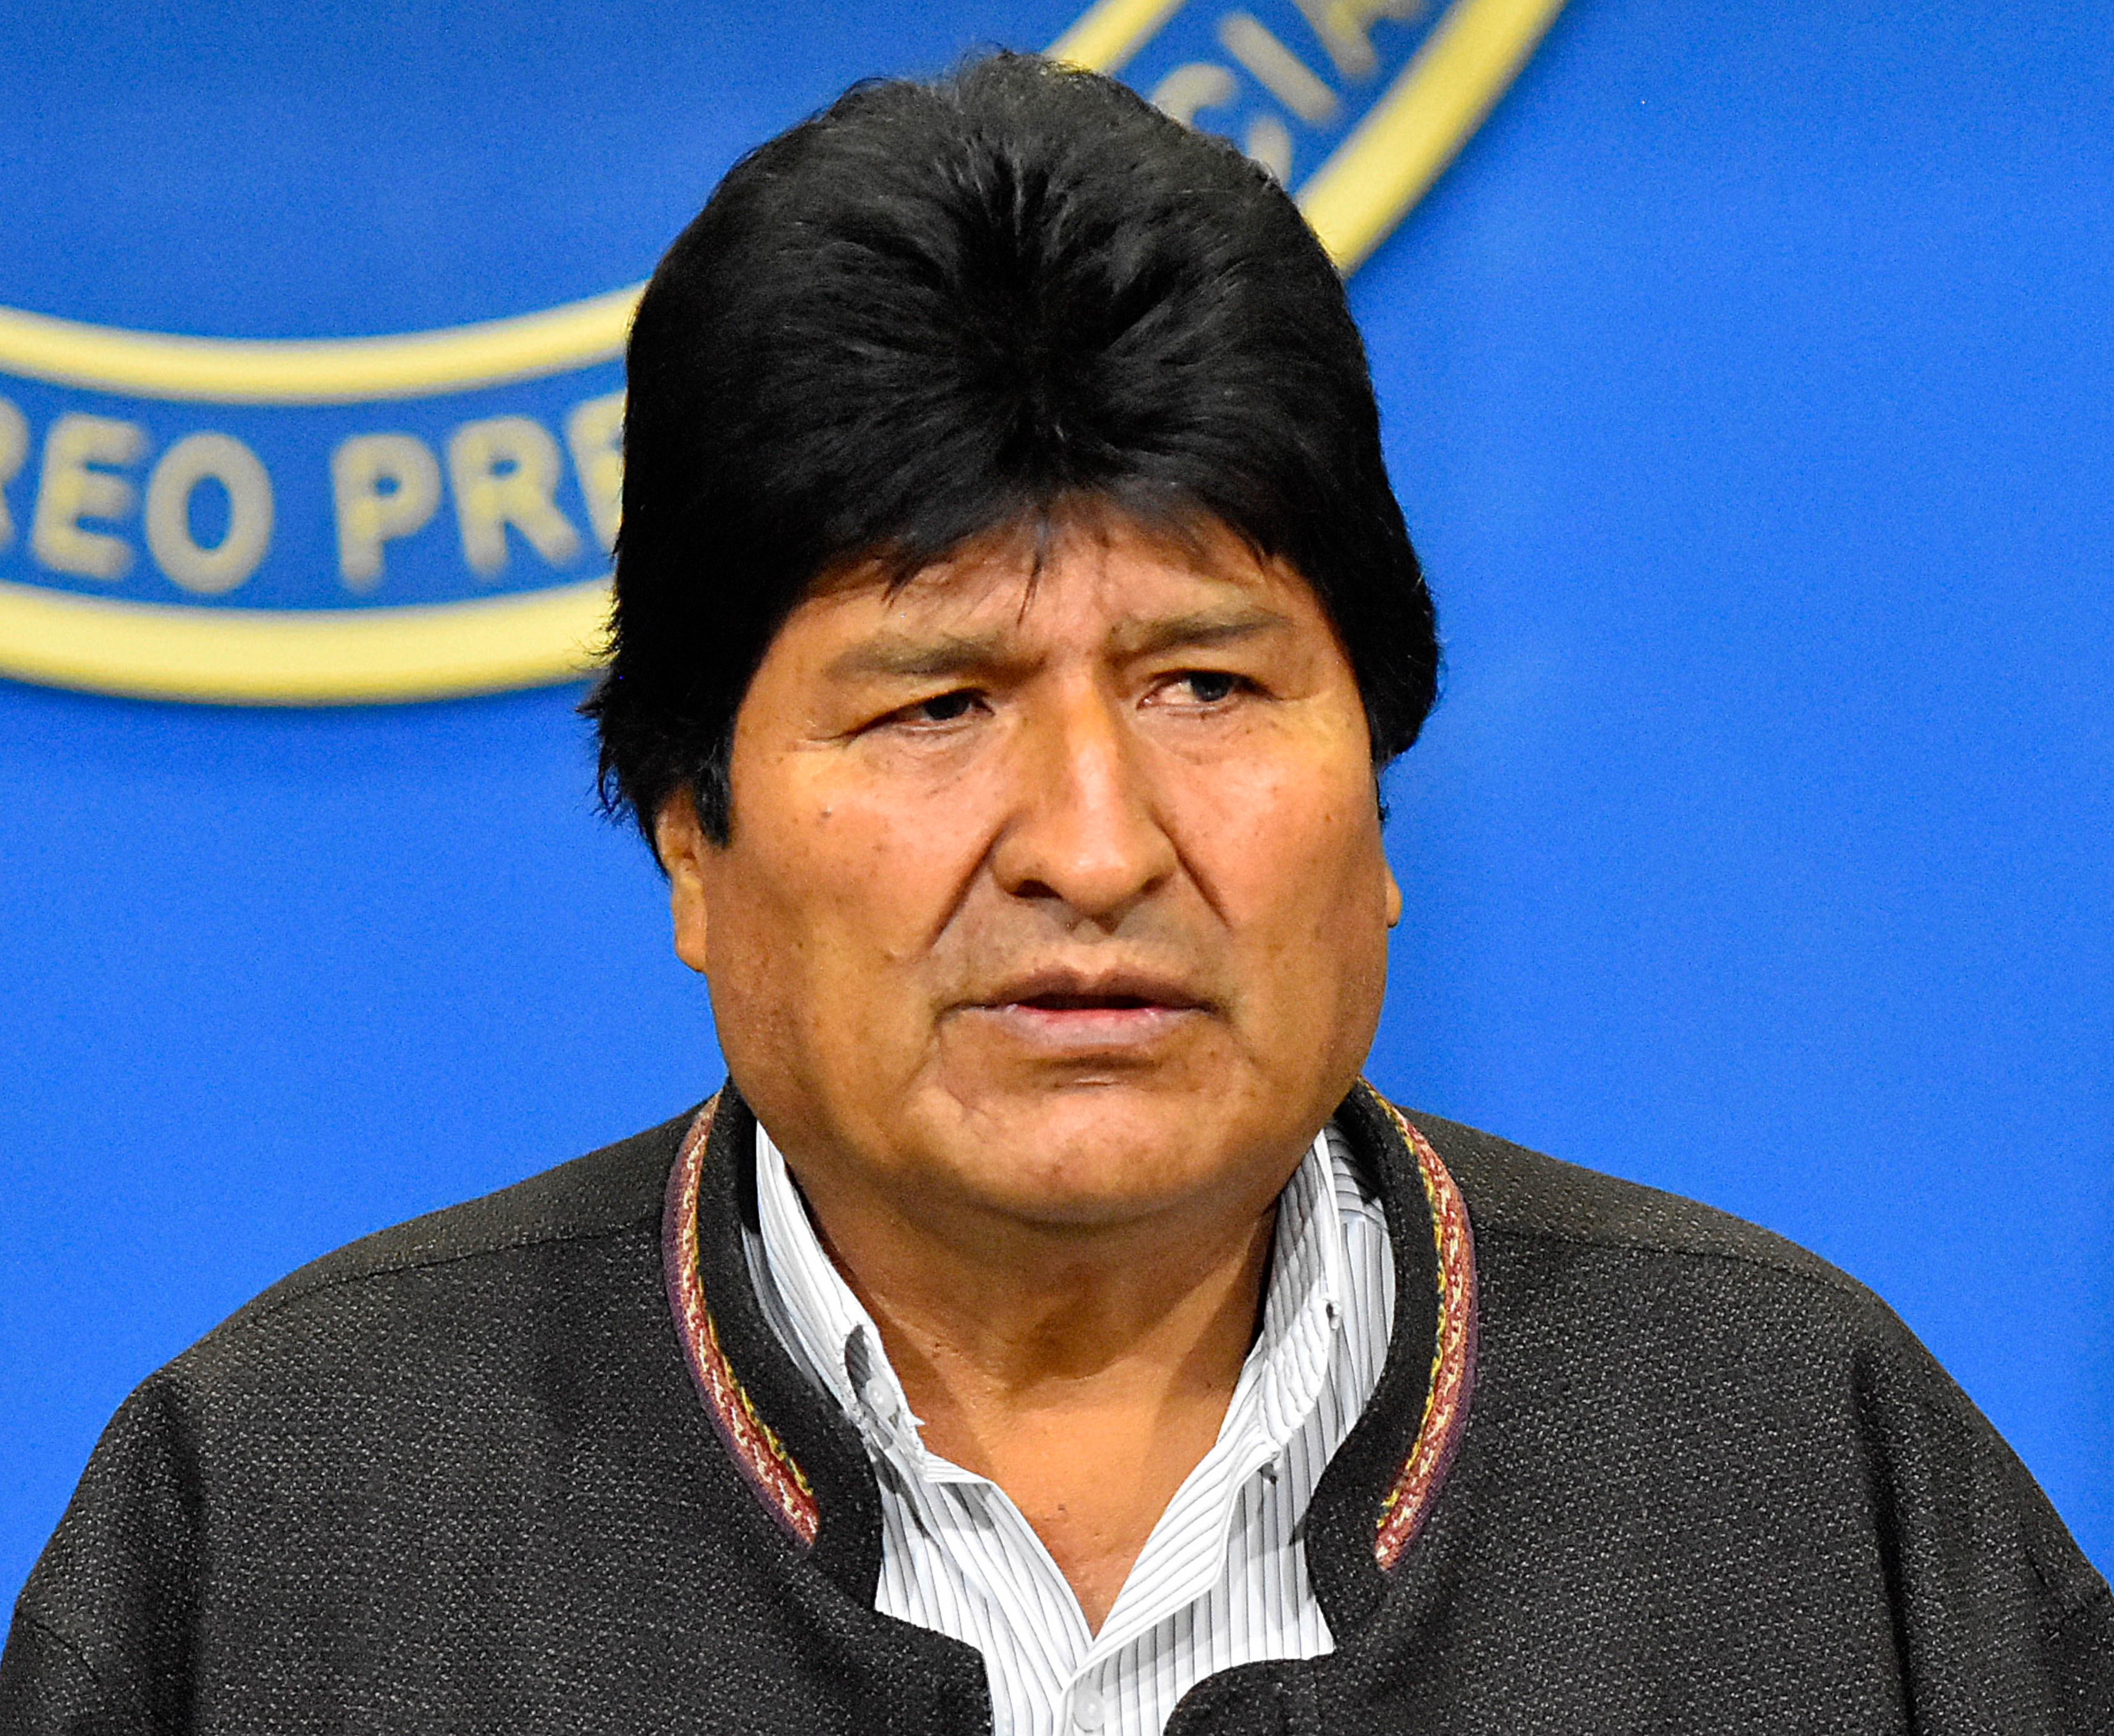  Evo Morales llegaría a México hoy, entre las 11:00 y 11:30: Ebrard